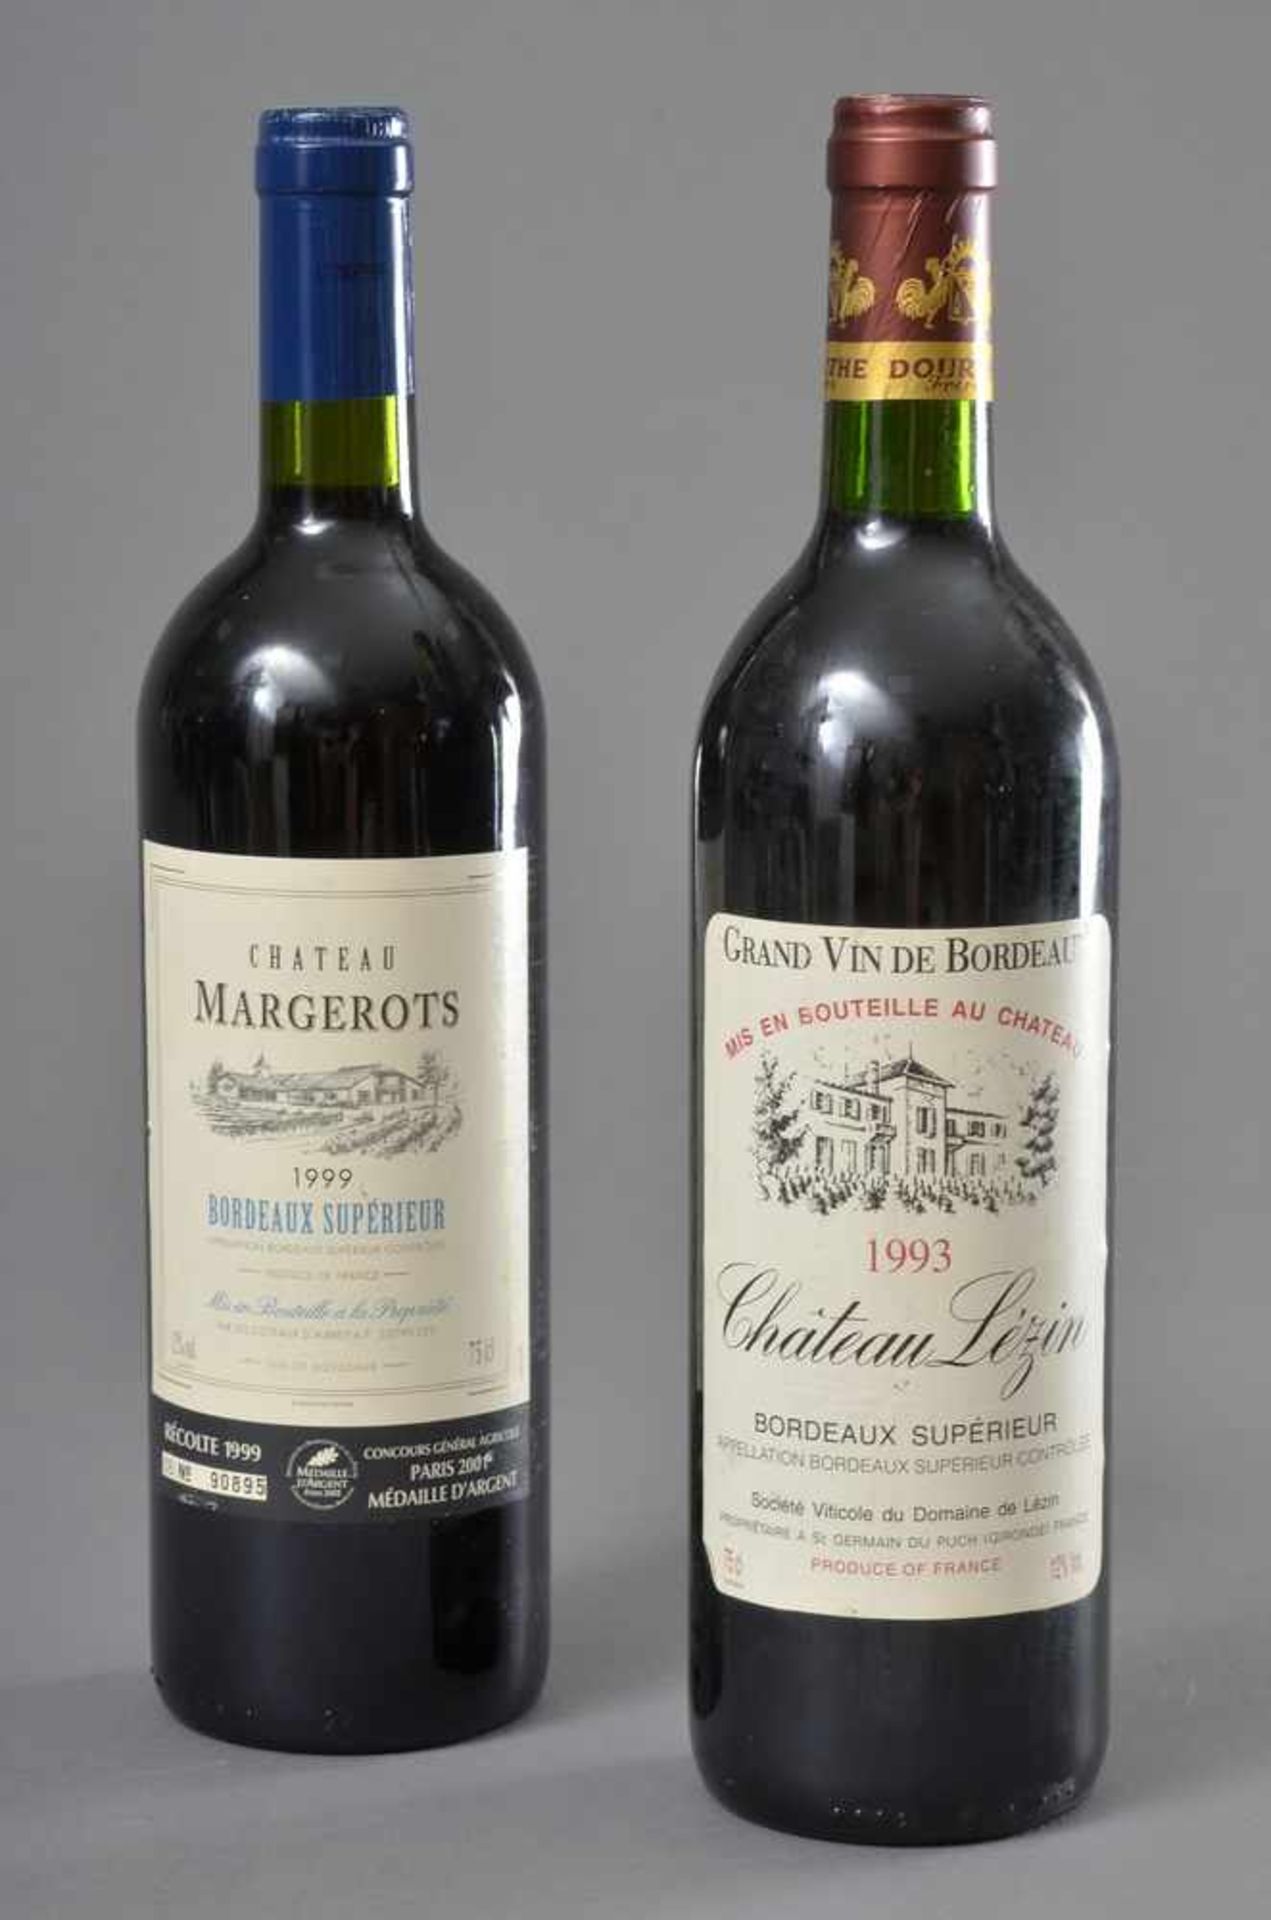 2 Diverse Flaschen französische Rotweine: 1993 Chateau Lézin, Grand vin de Bordeaux Superieur, ABSC,